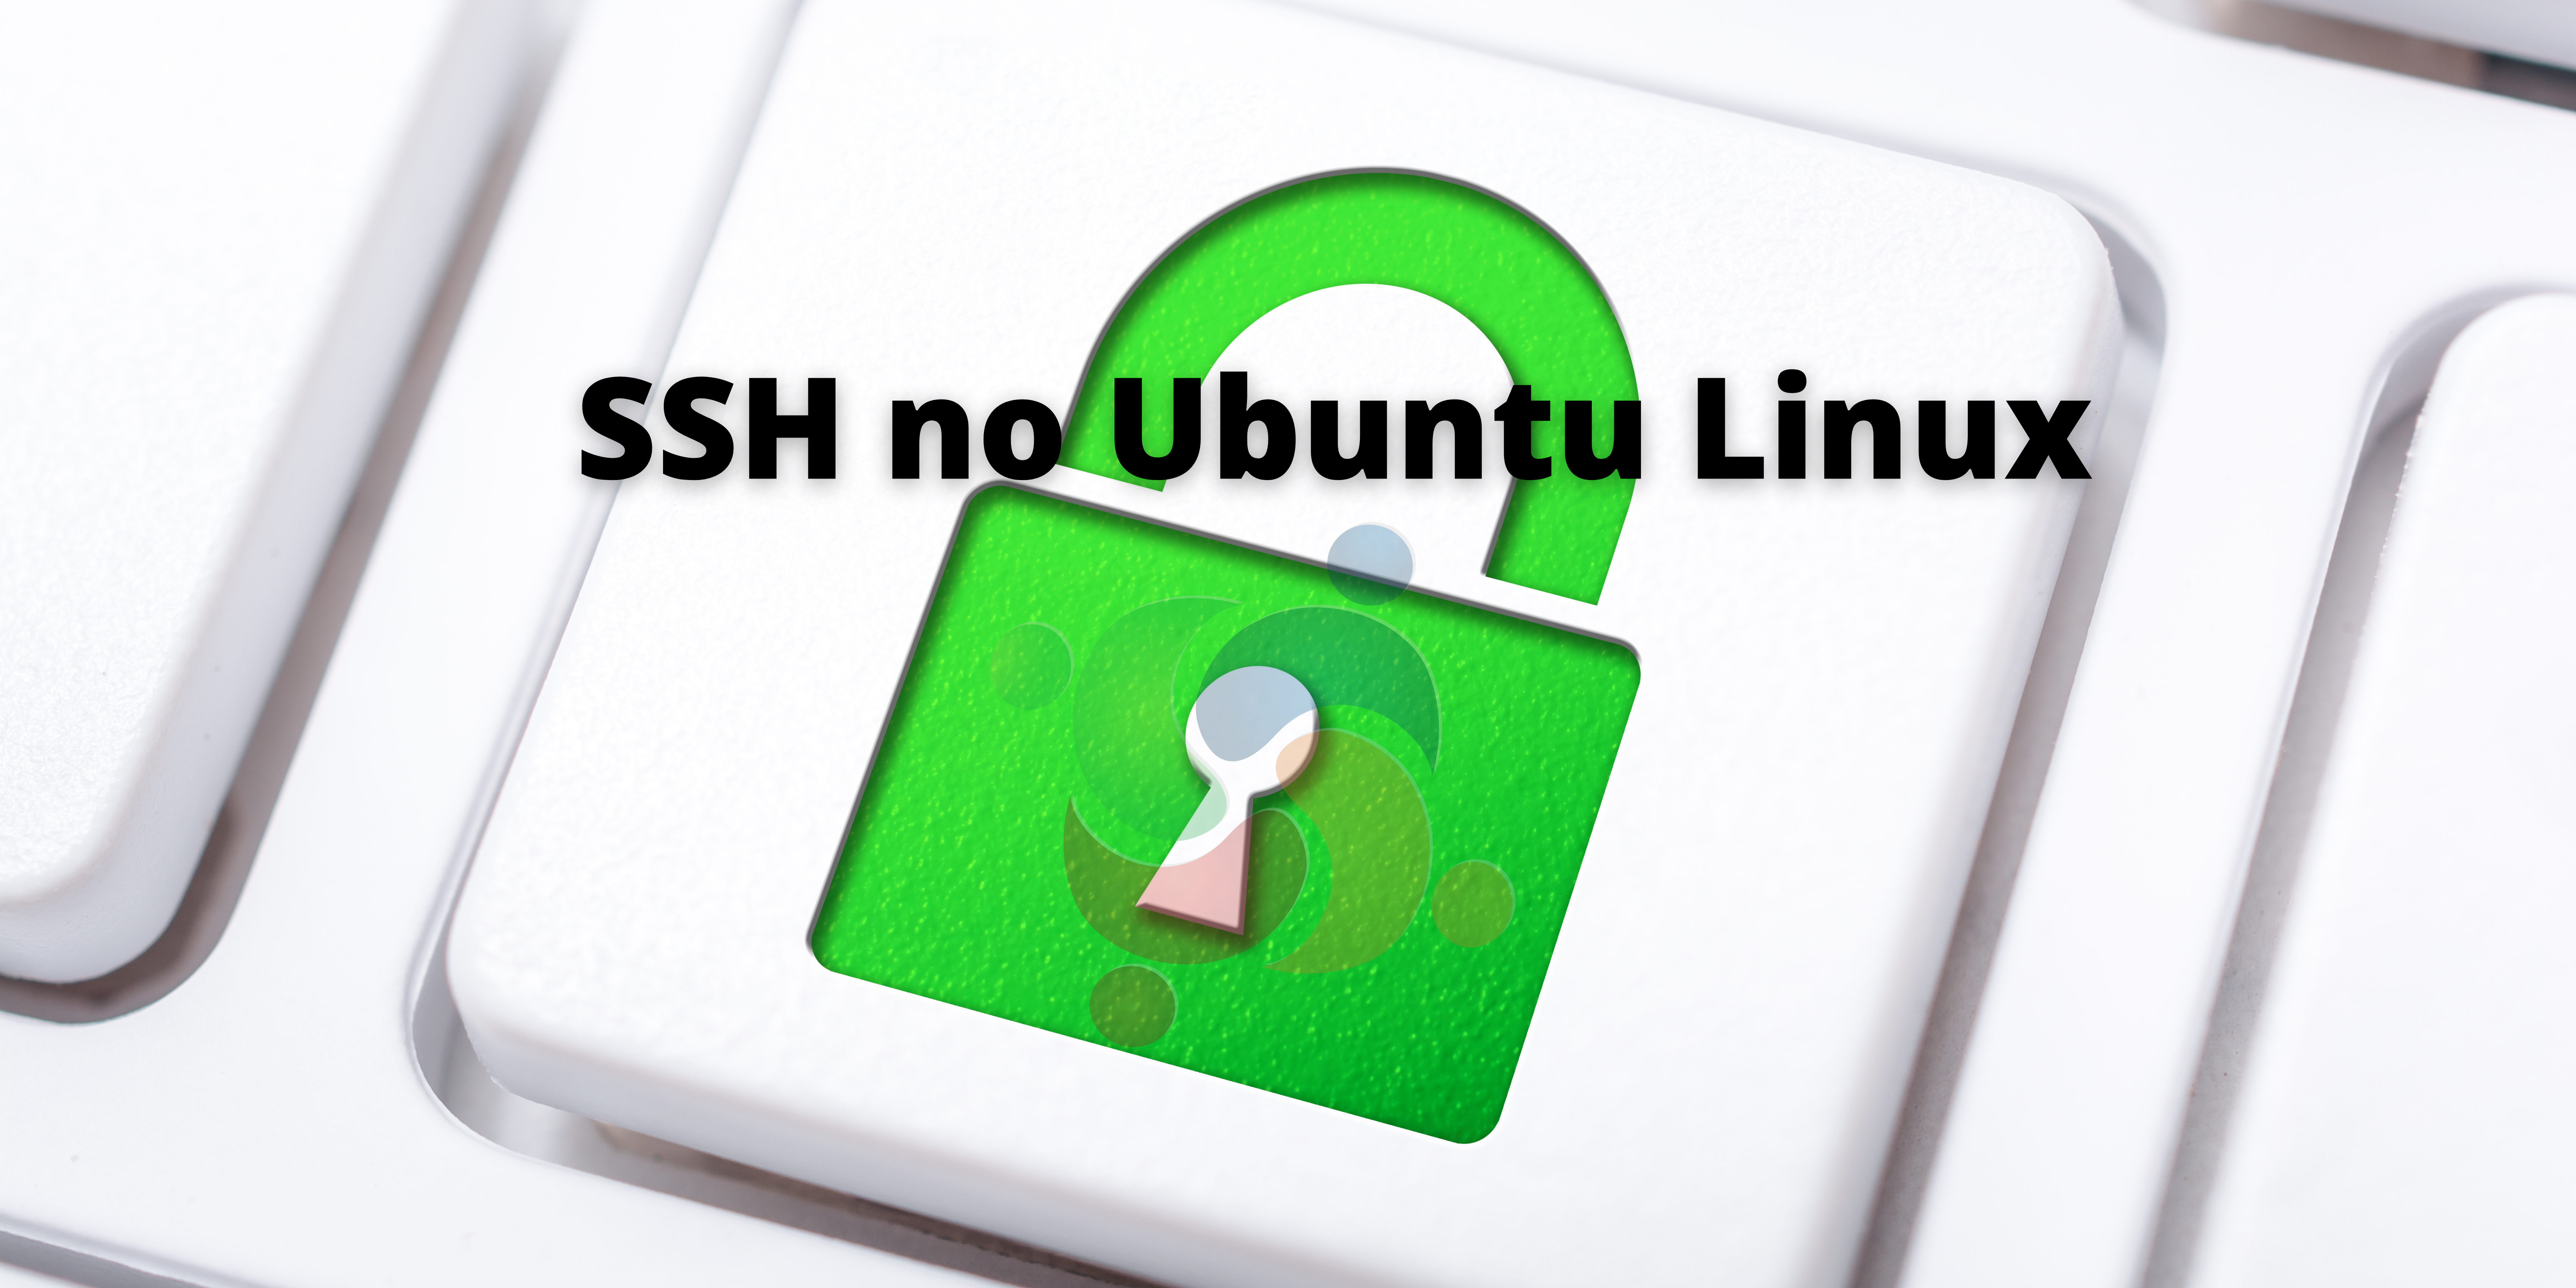 Saiba como instalar, ativar e usar o SSH no Ubuntu Linux!